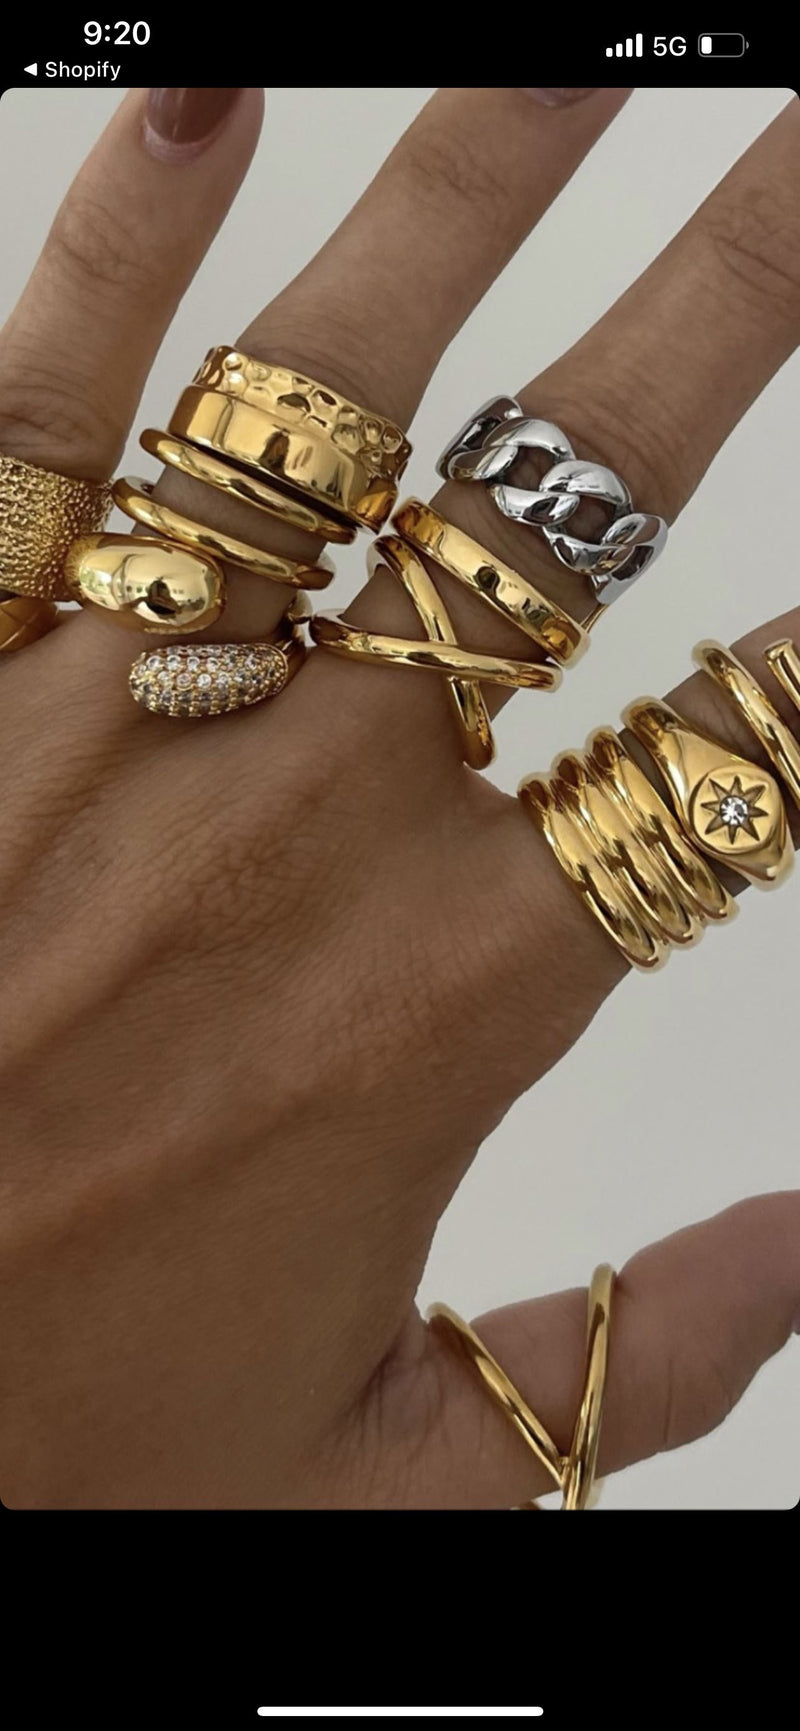 Anna Ring Ring Sahira Jewelry Design 